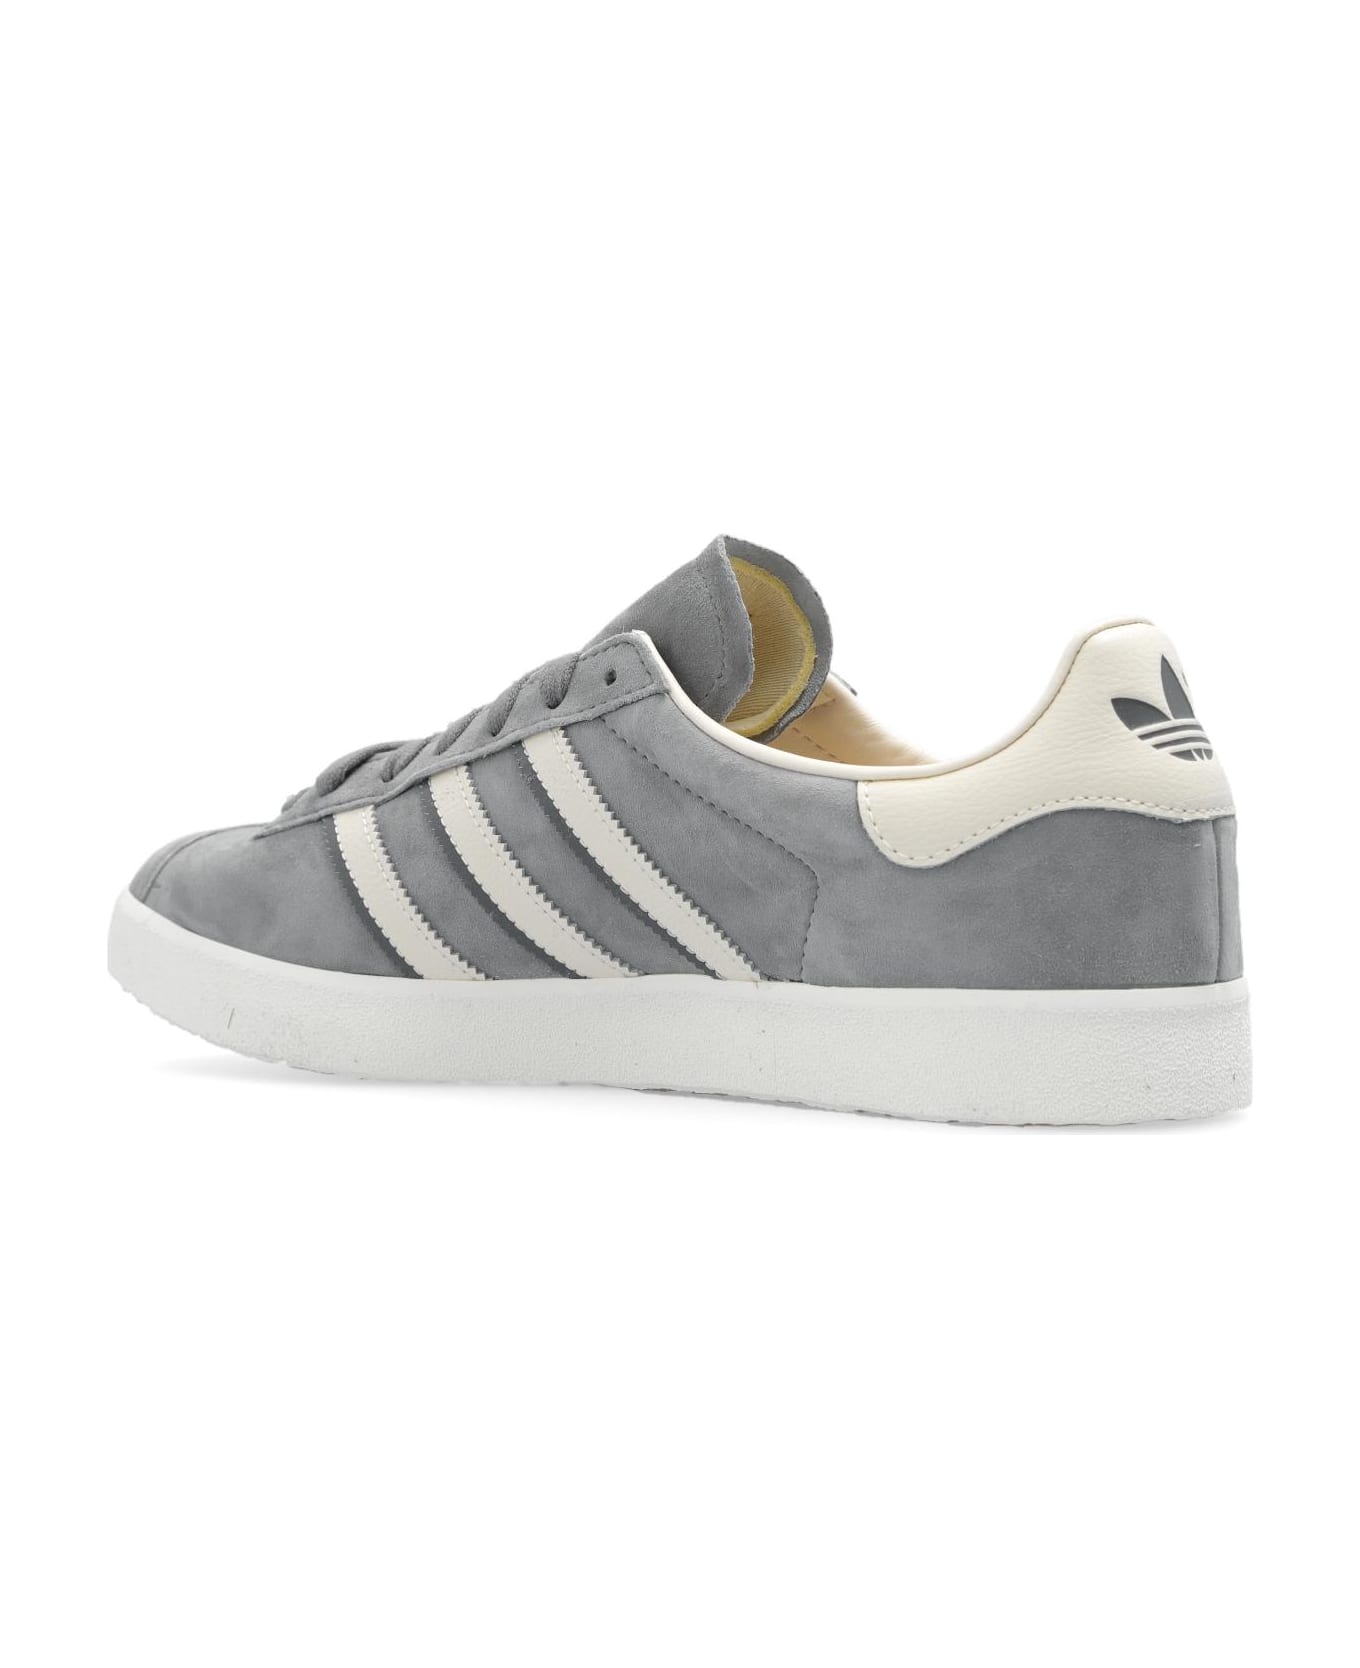 Adidas Originals 'gazelle 85' Sneakers - Grey